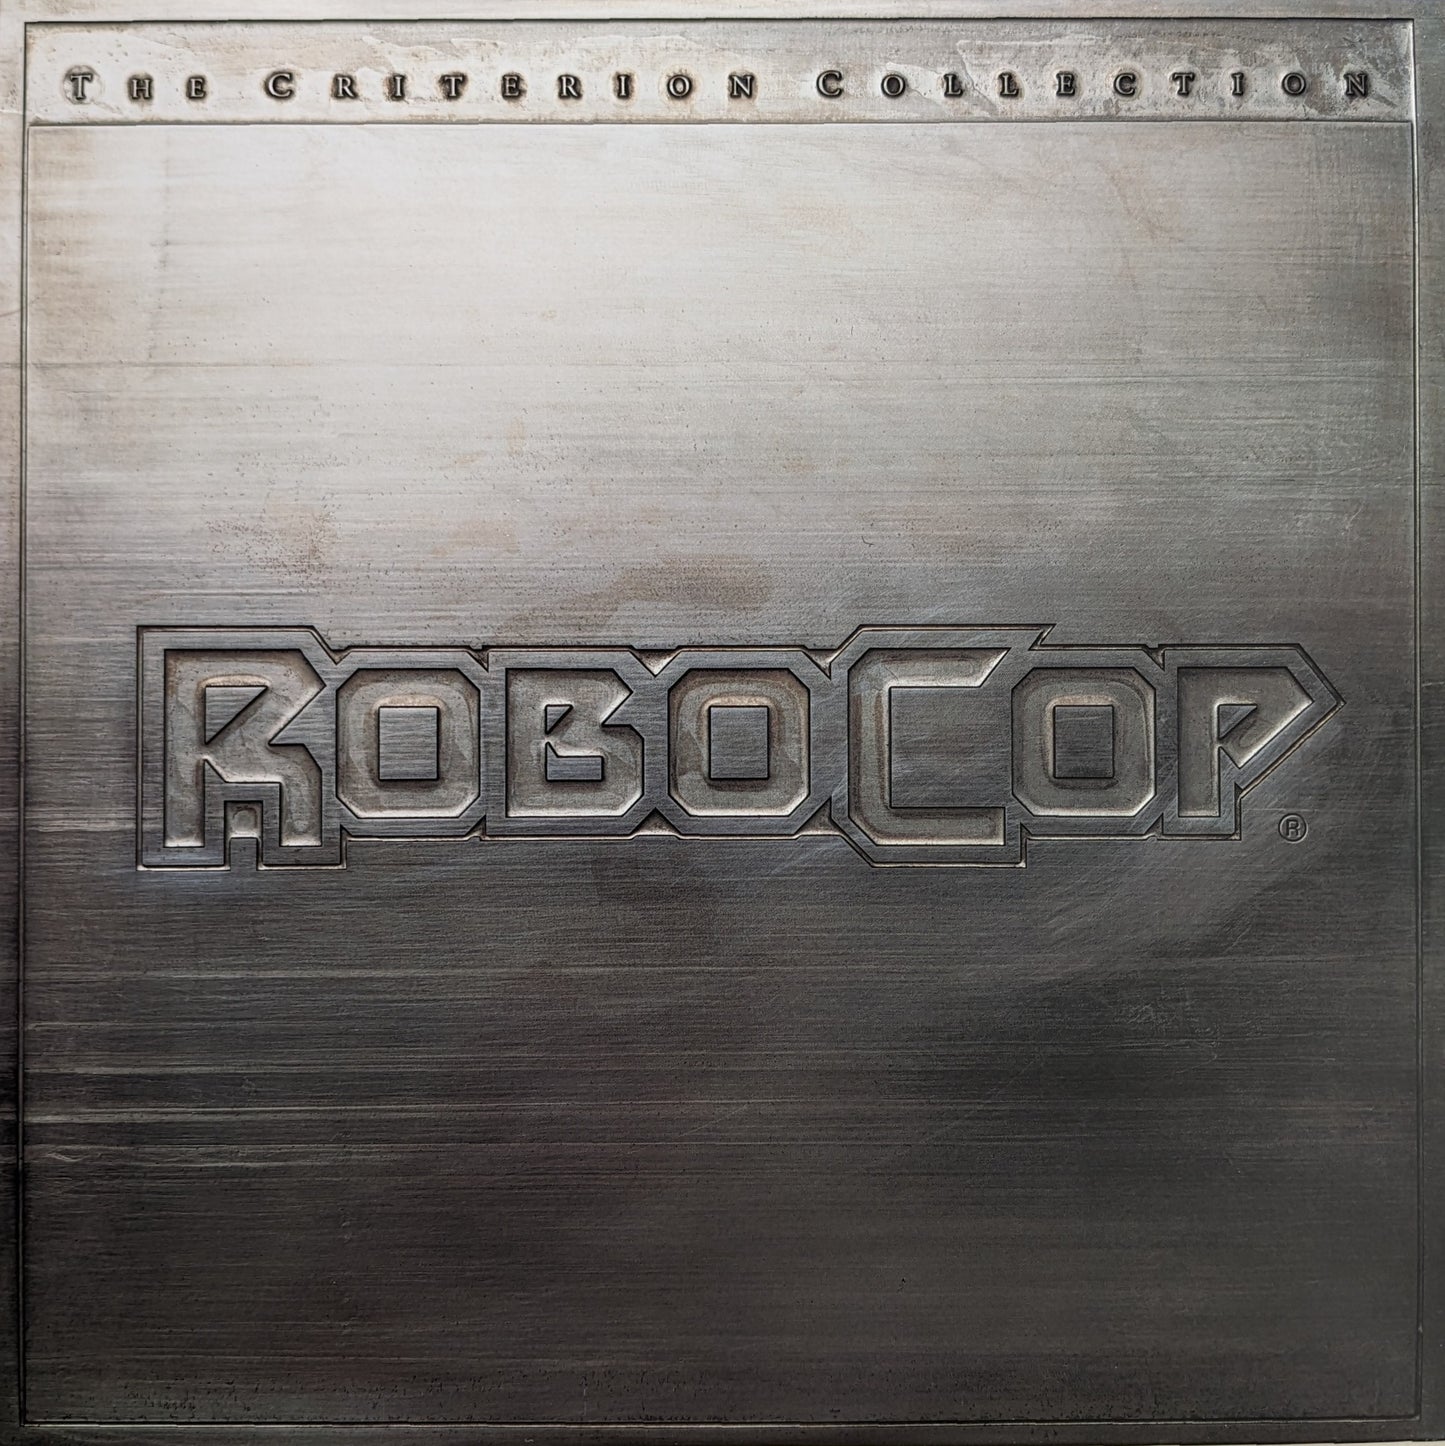 Robocop (1987) North American Laserdisc